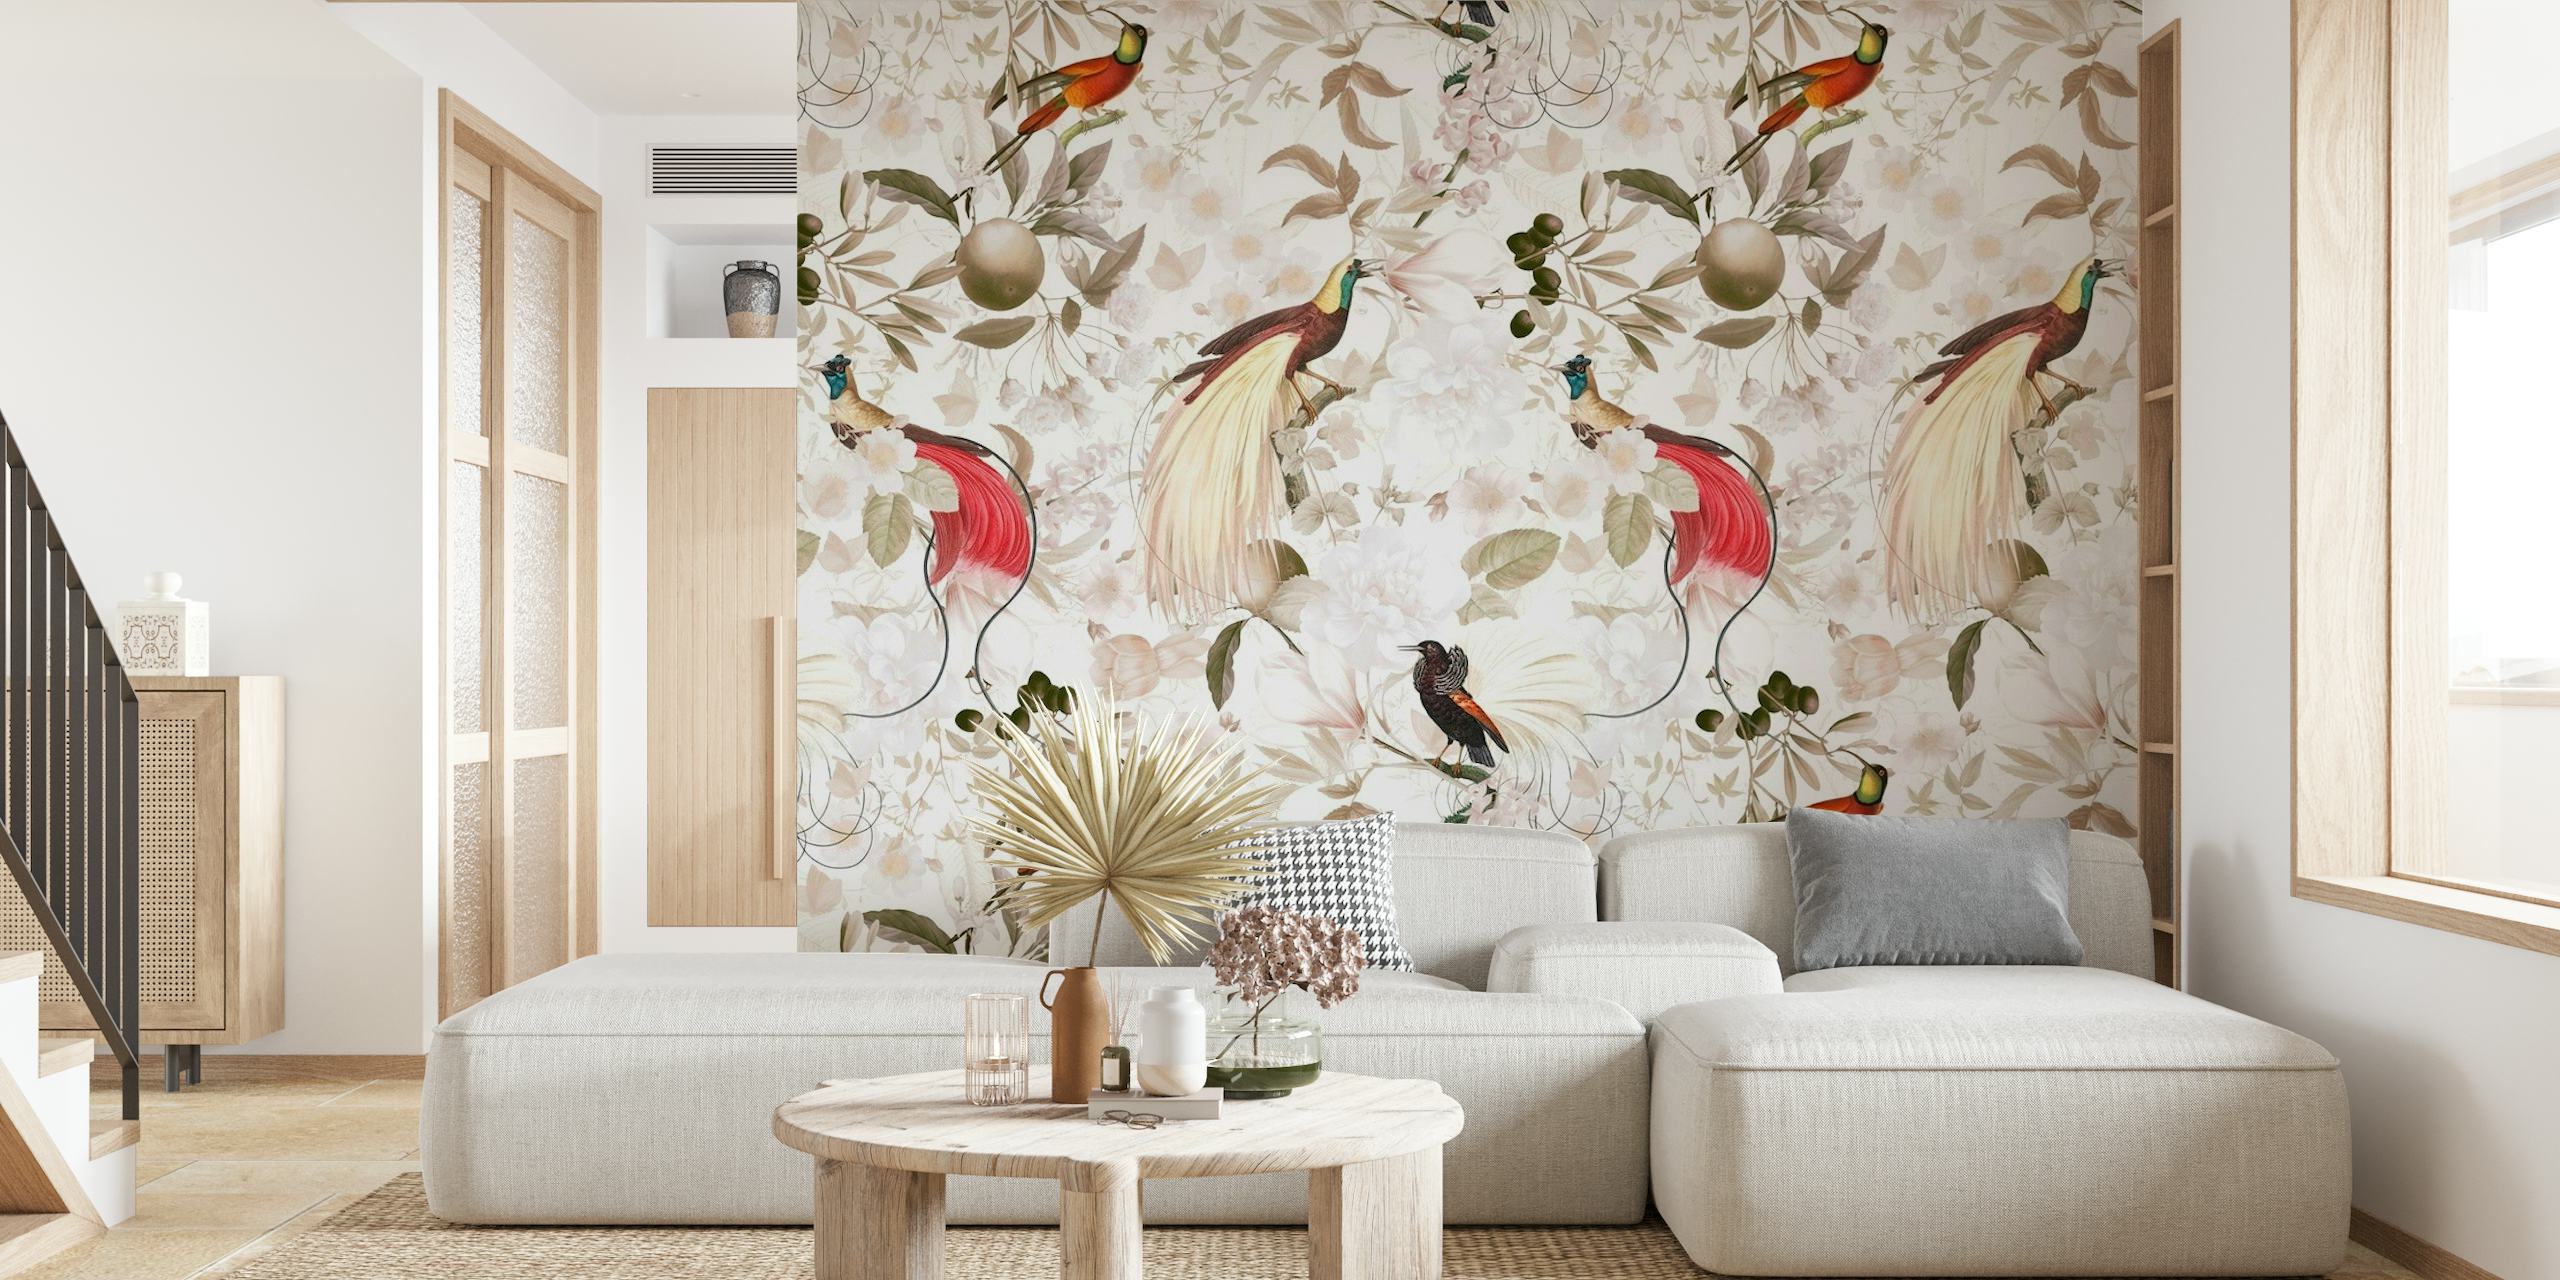 Mural de parede com pássaros coloridos do paraíso em um cenário de selva vintage